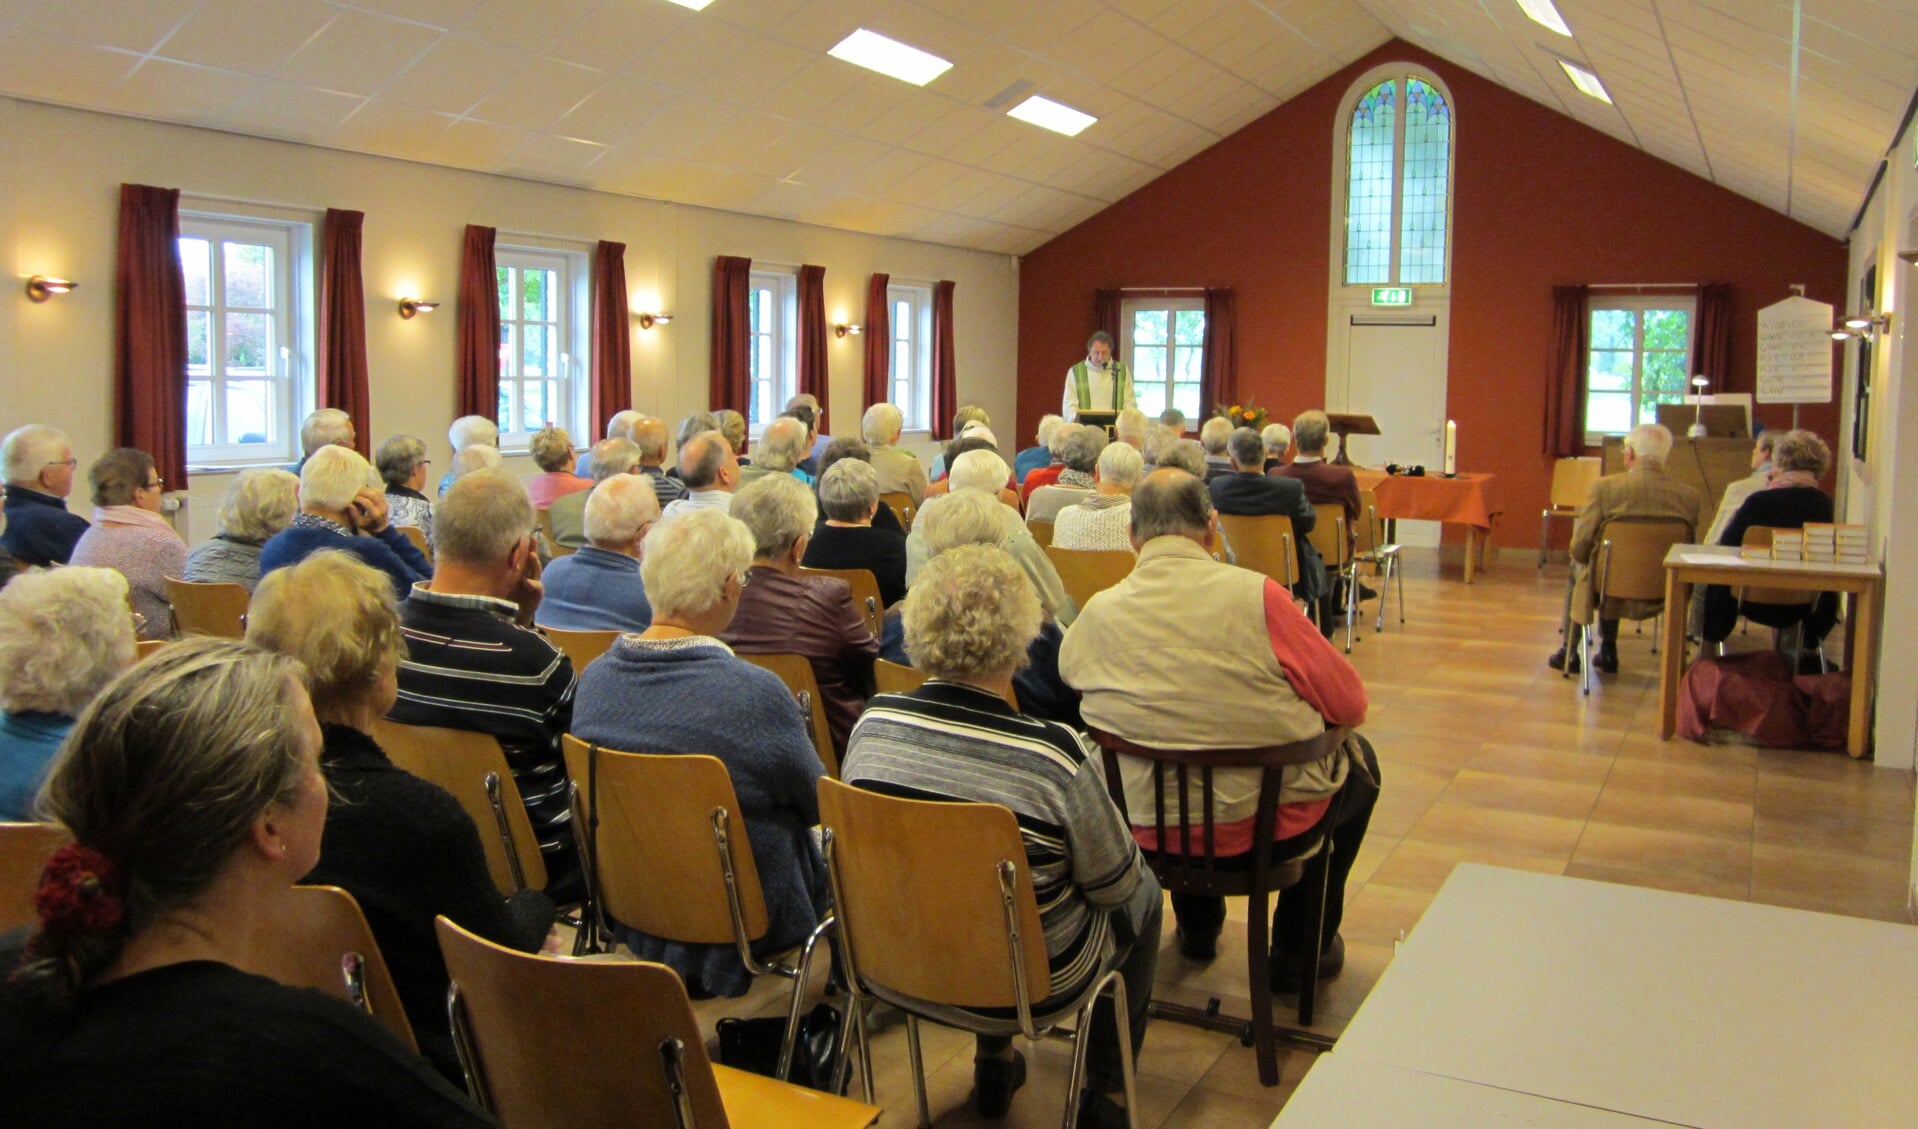 Aandachtig luisteren de kerkgangers in de laatste kerkdienst in De Wildenborchse Kapel naar de preek van dominee Kool. Foto: PR. 